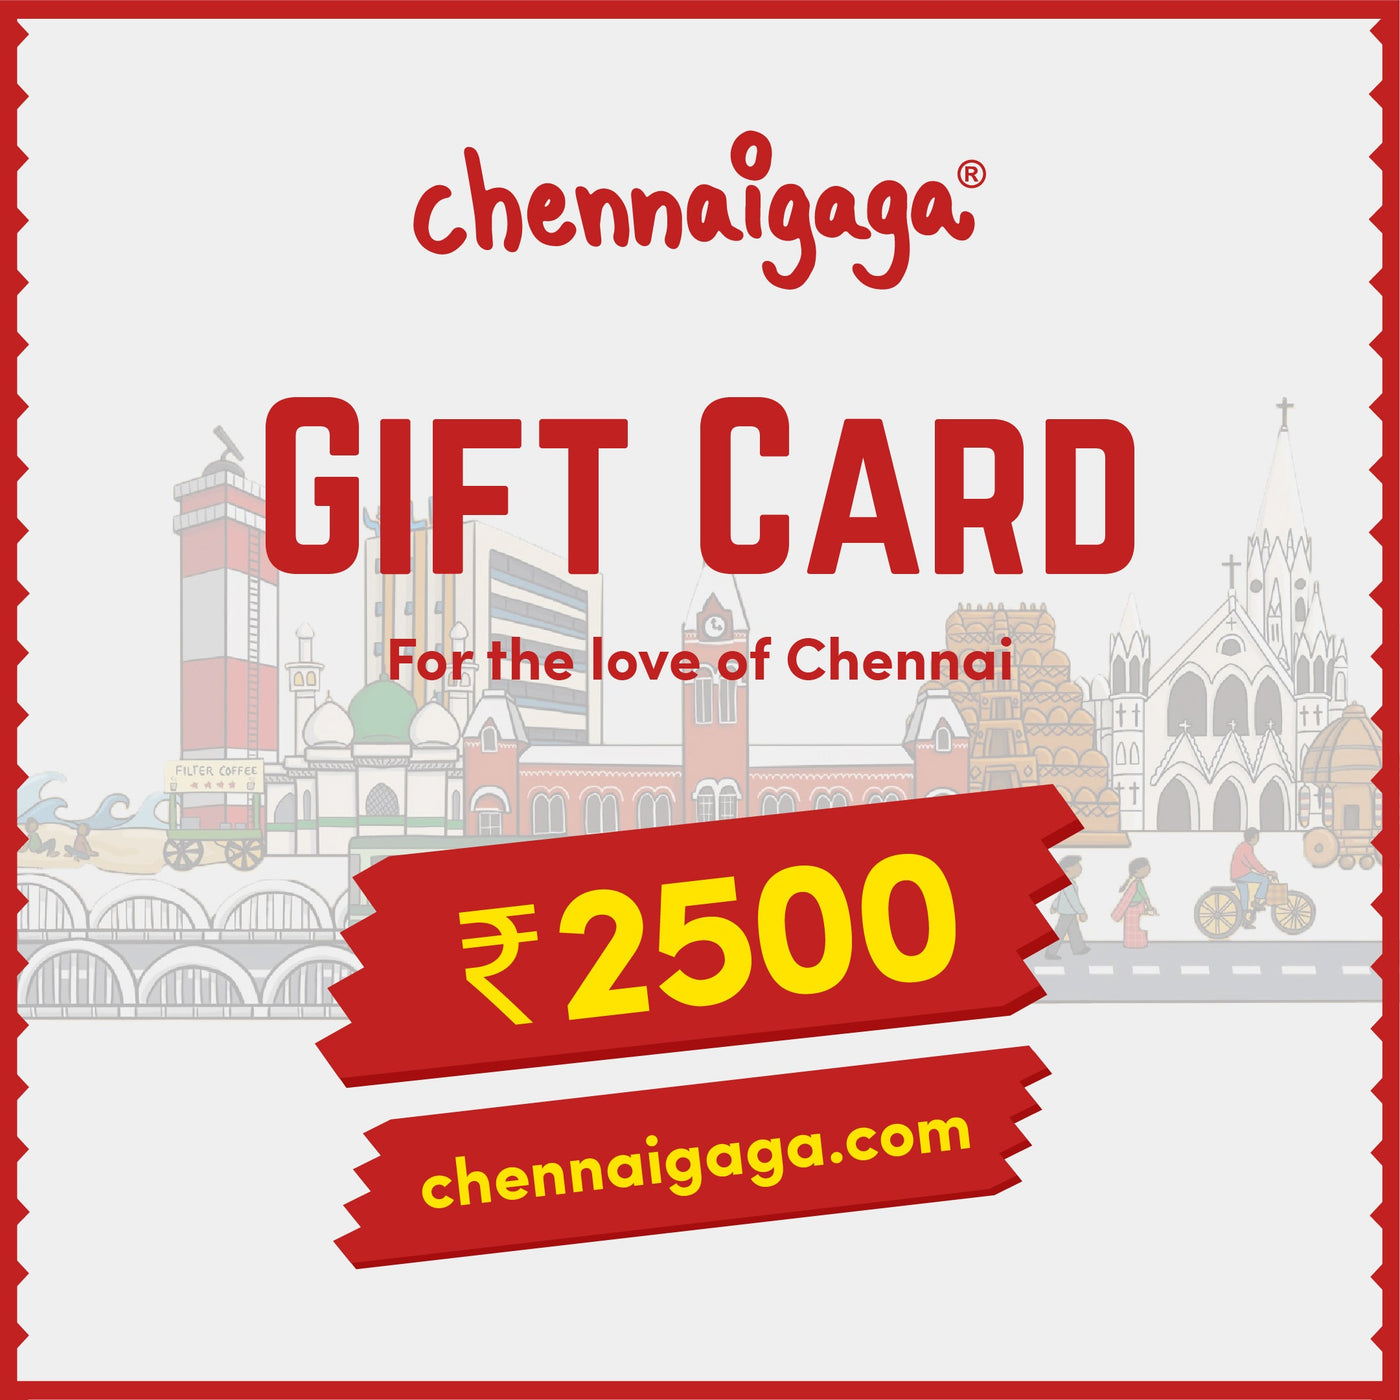 Chennaigaga Gift Card